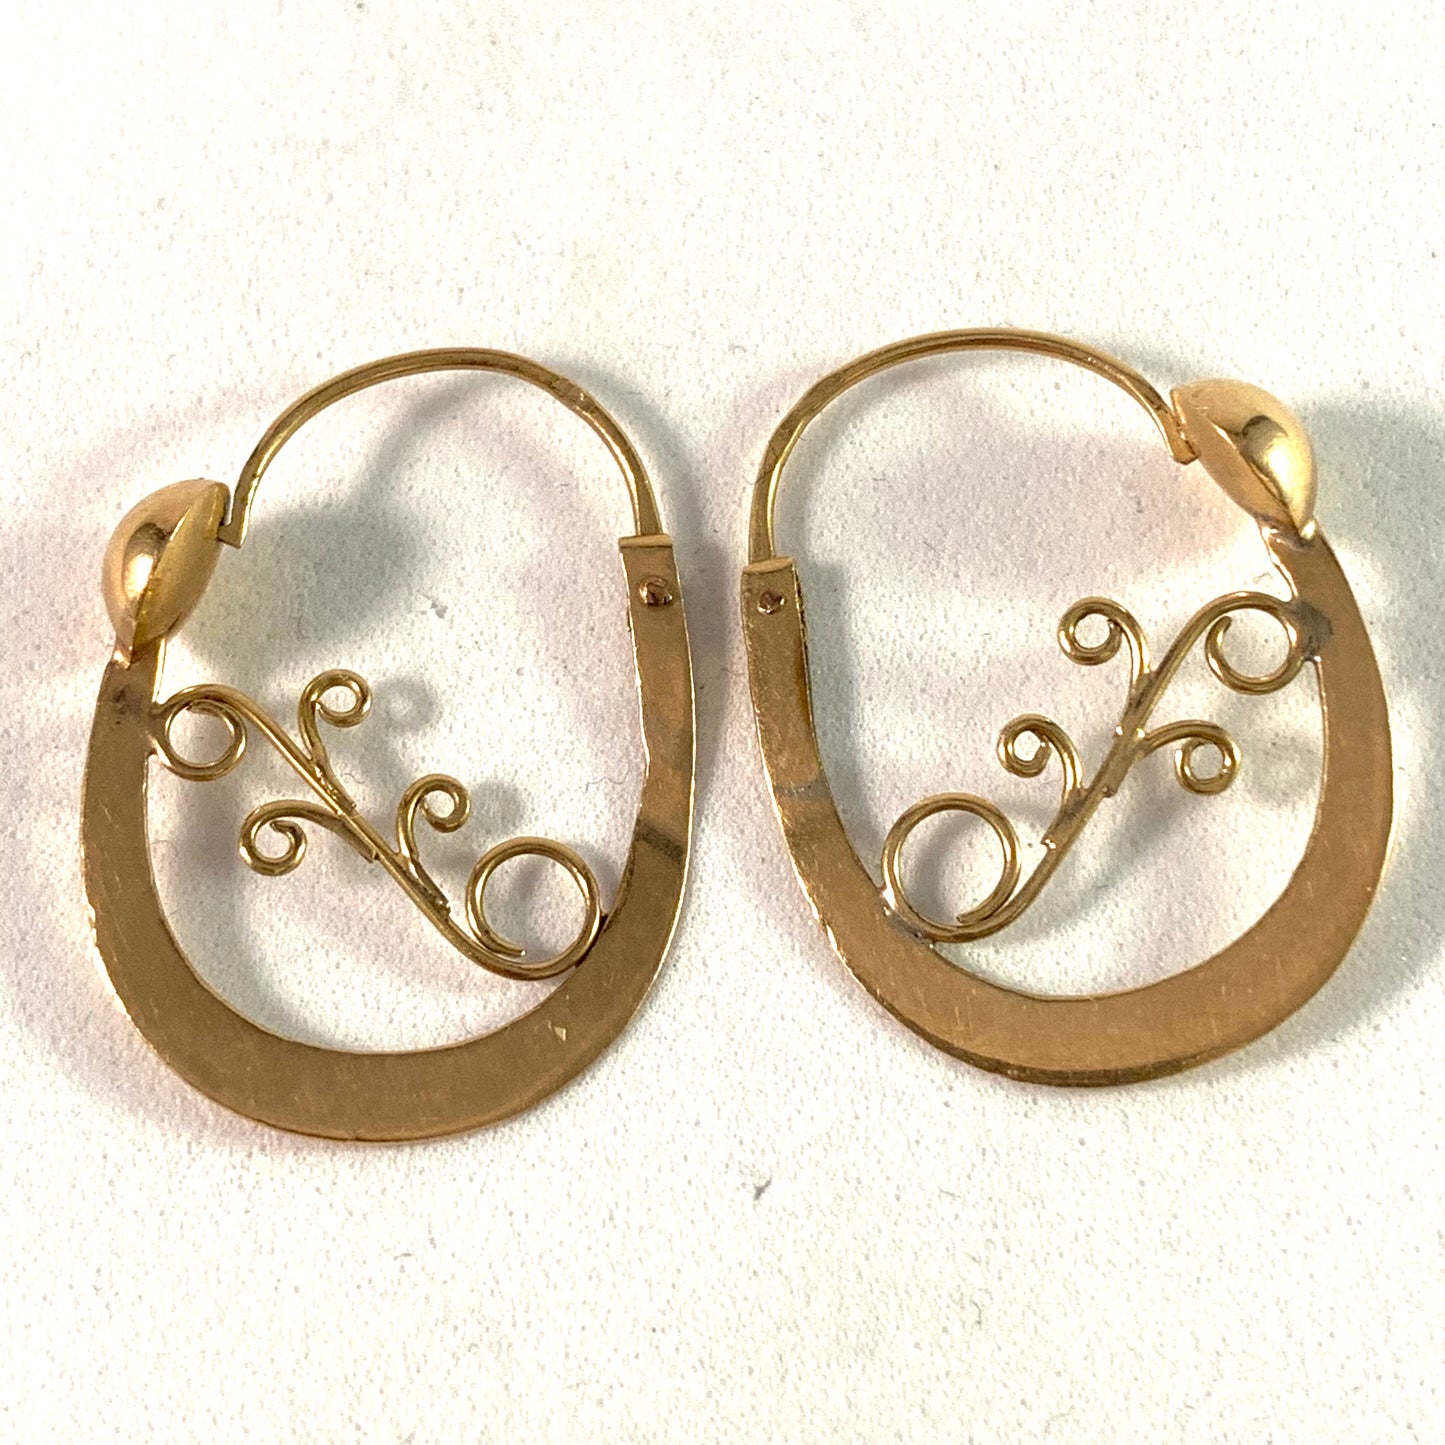 France Art Nouveau c year 1900, 18k Gold Earrings.